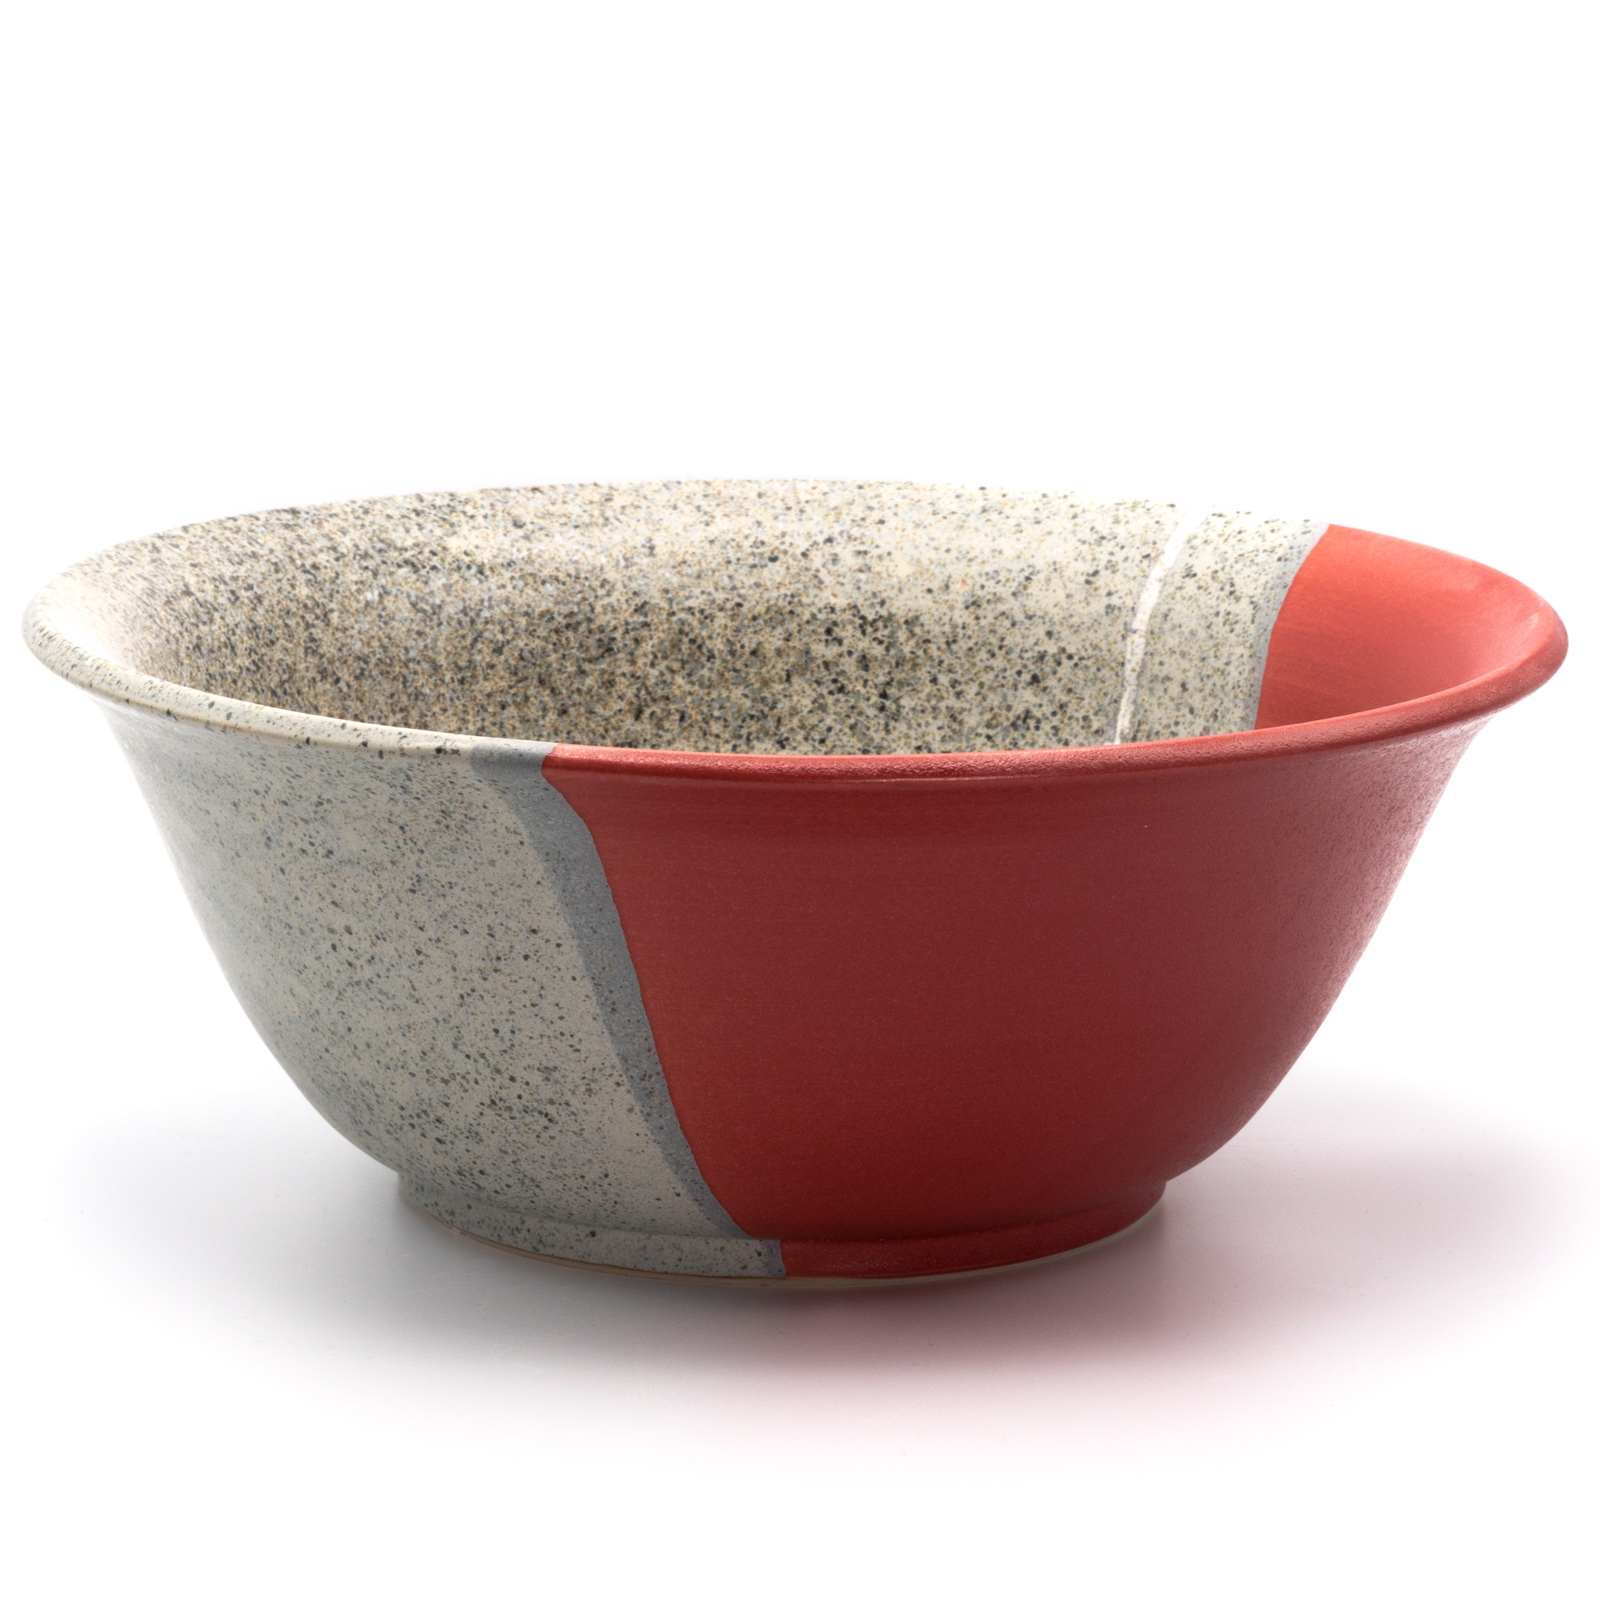 Salatschüssel Keramik | große Salatschüssel rot